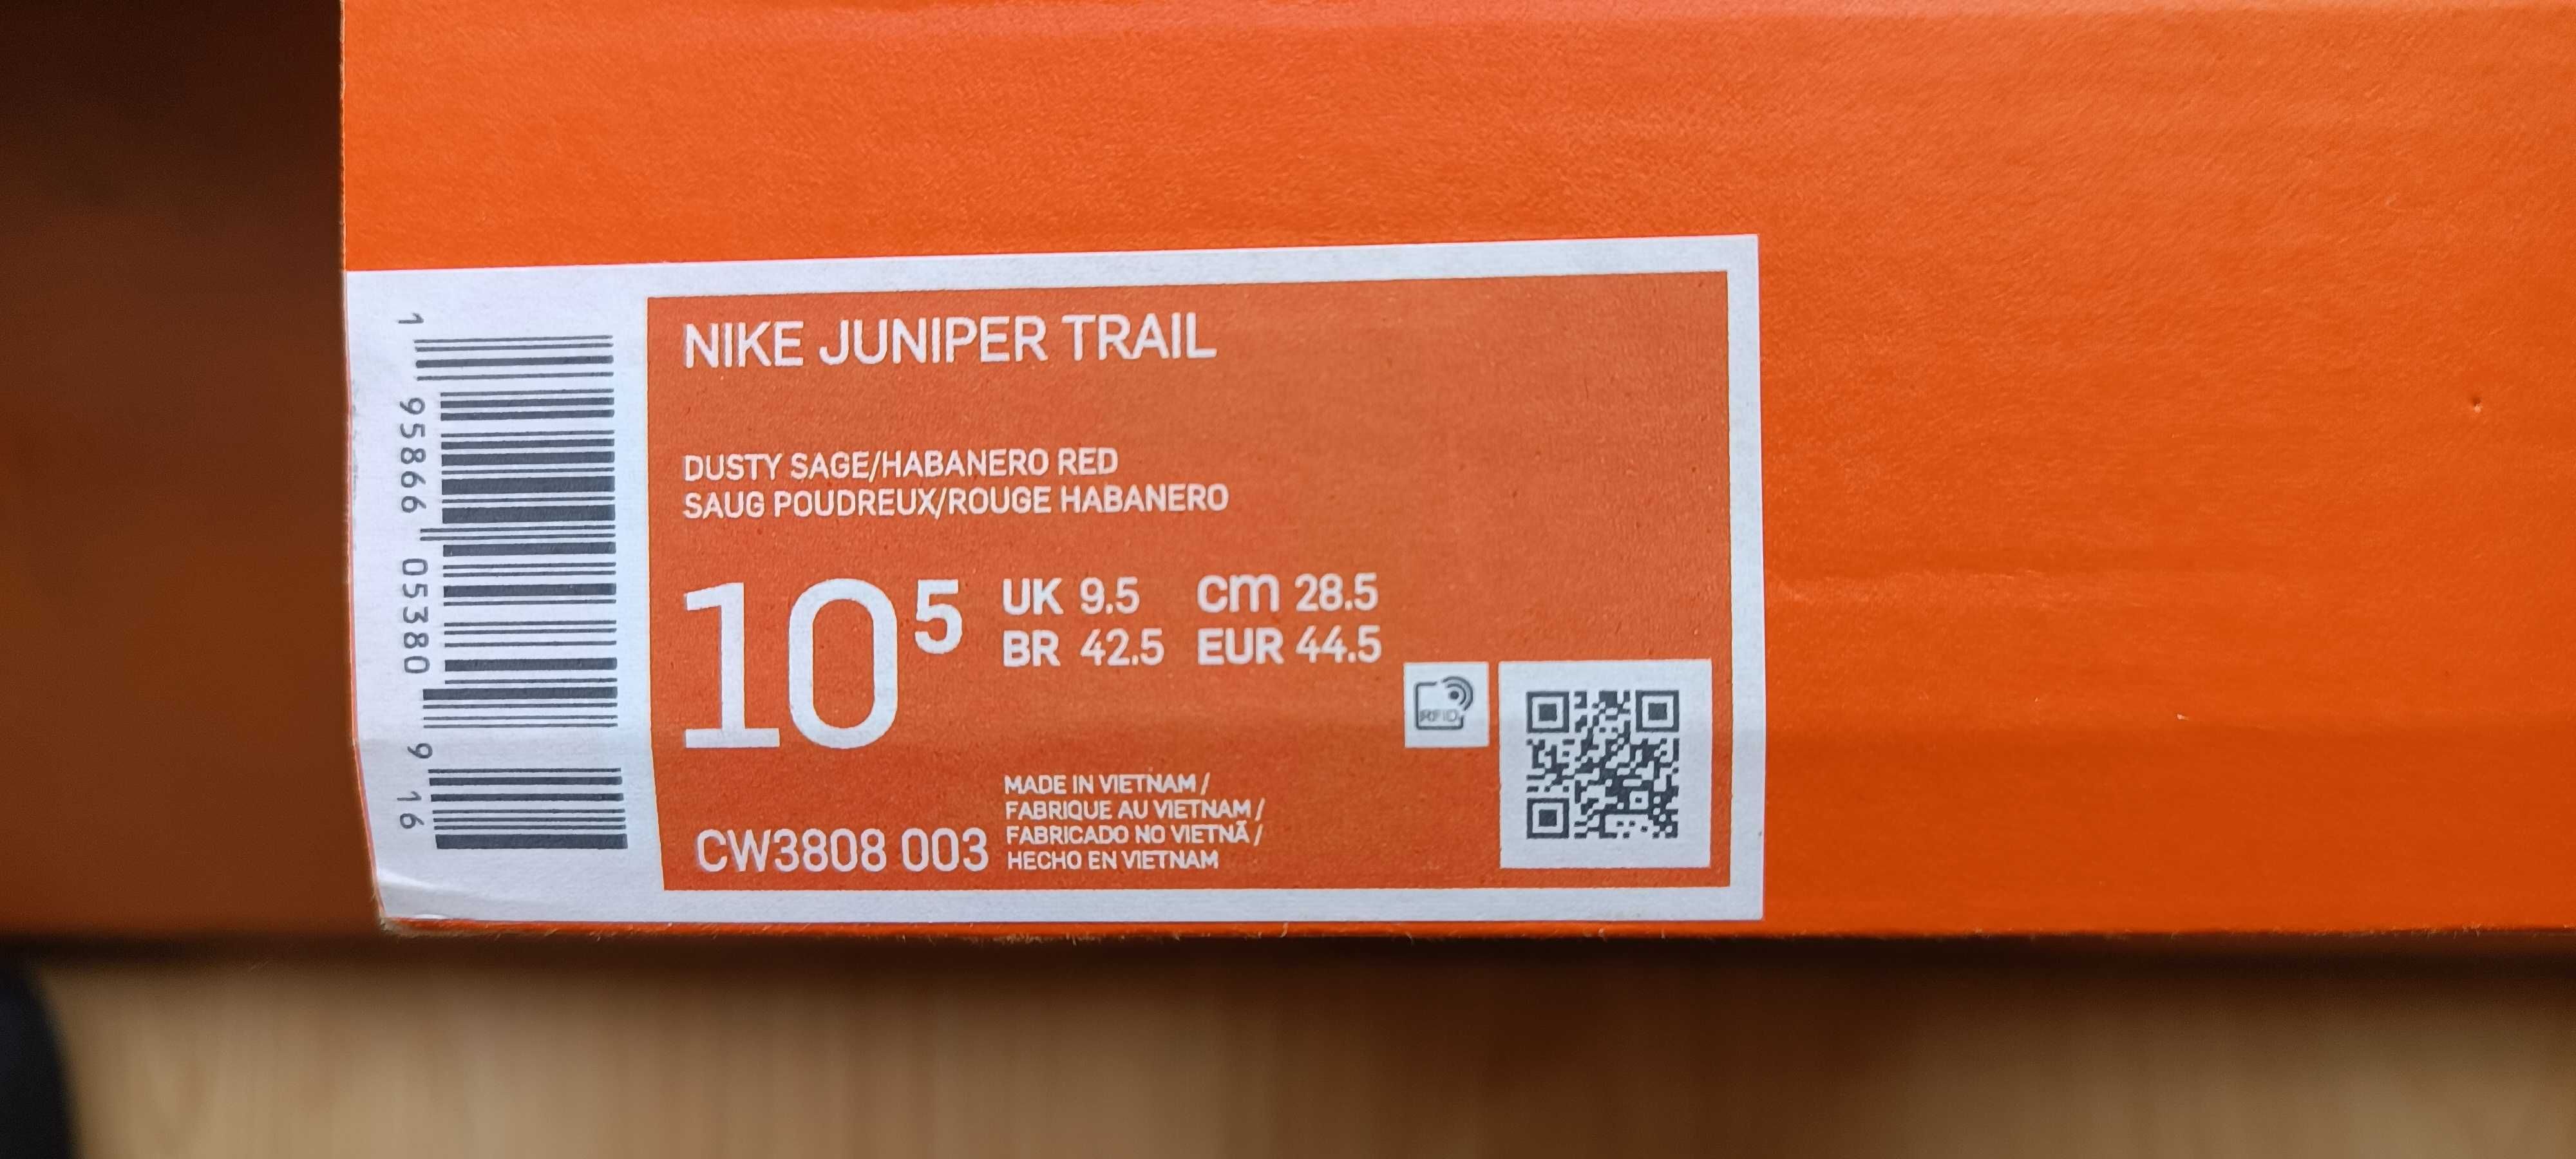 (44,5 - 28,5 cm) Nowe Buty NIKE JUNIPER Trail kod produktu CW3808, 003